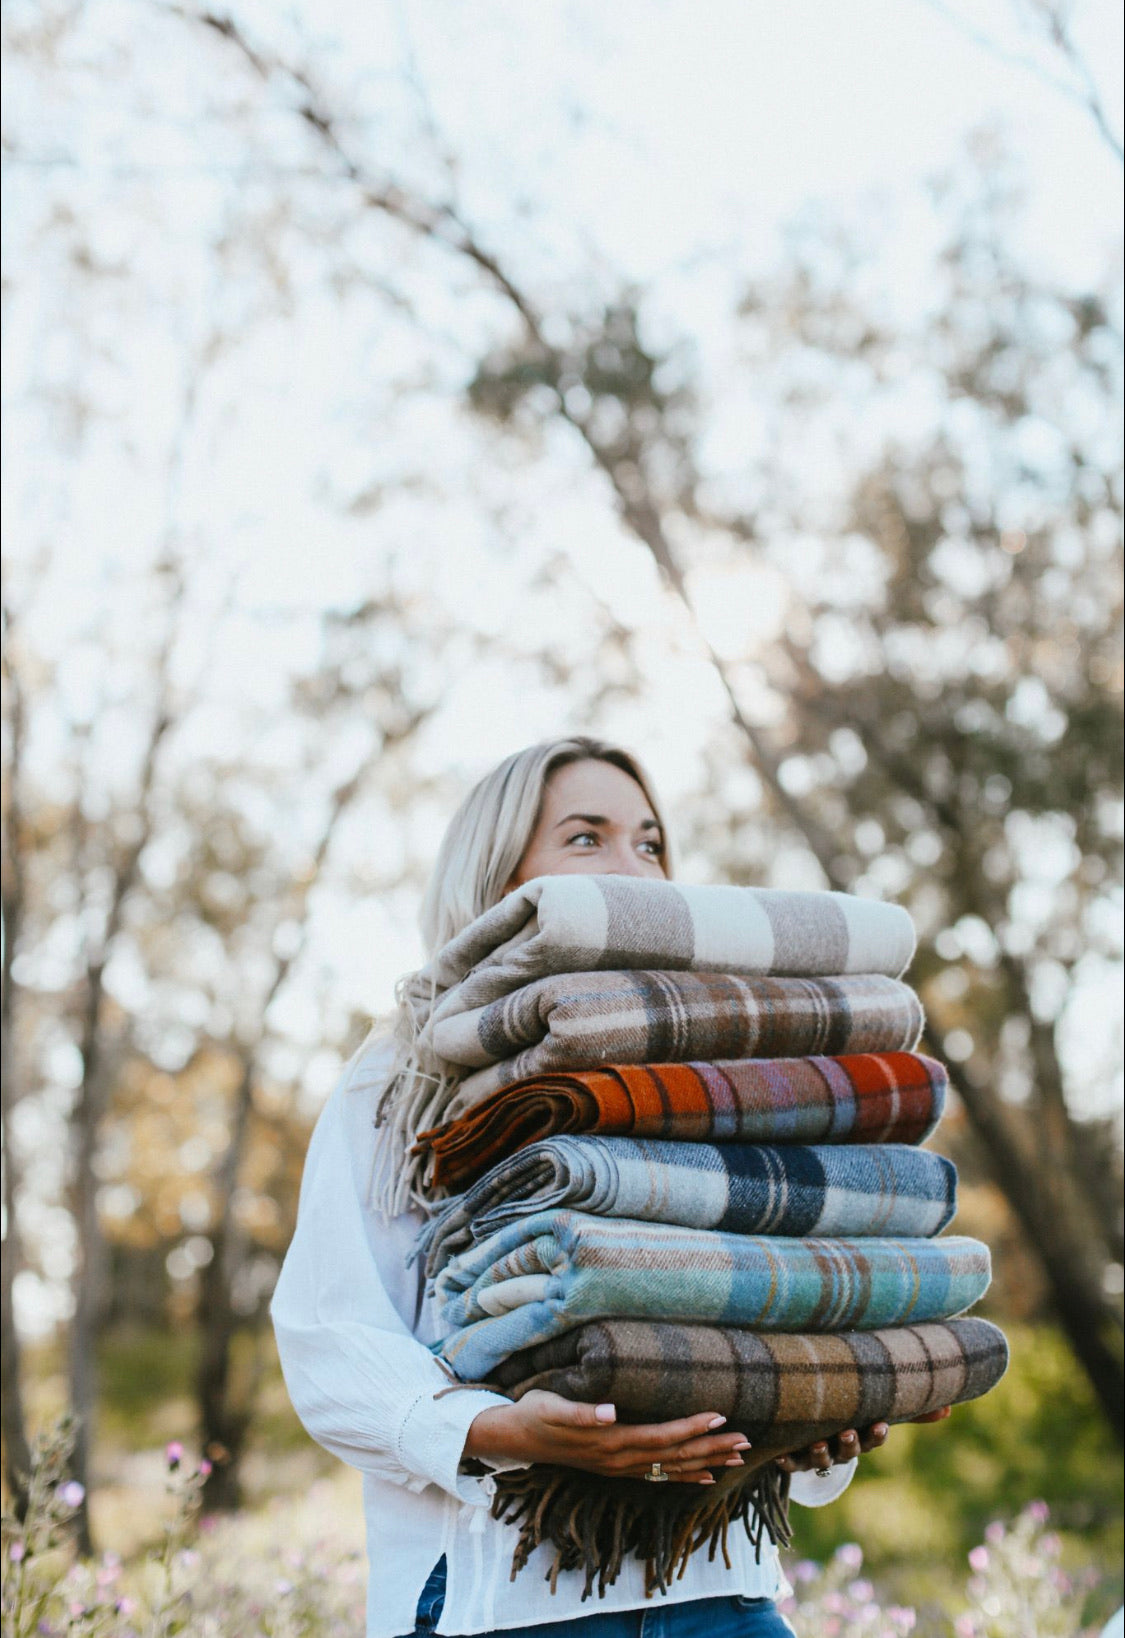 Winter | Recycled Wool Scottish Tartan Blanket